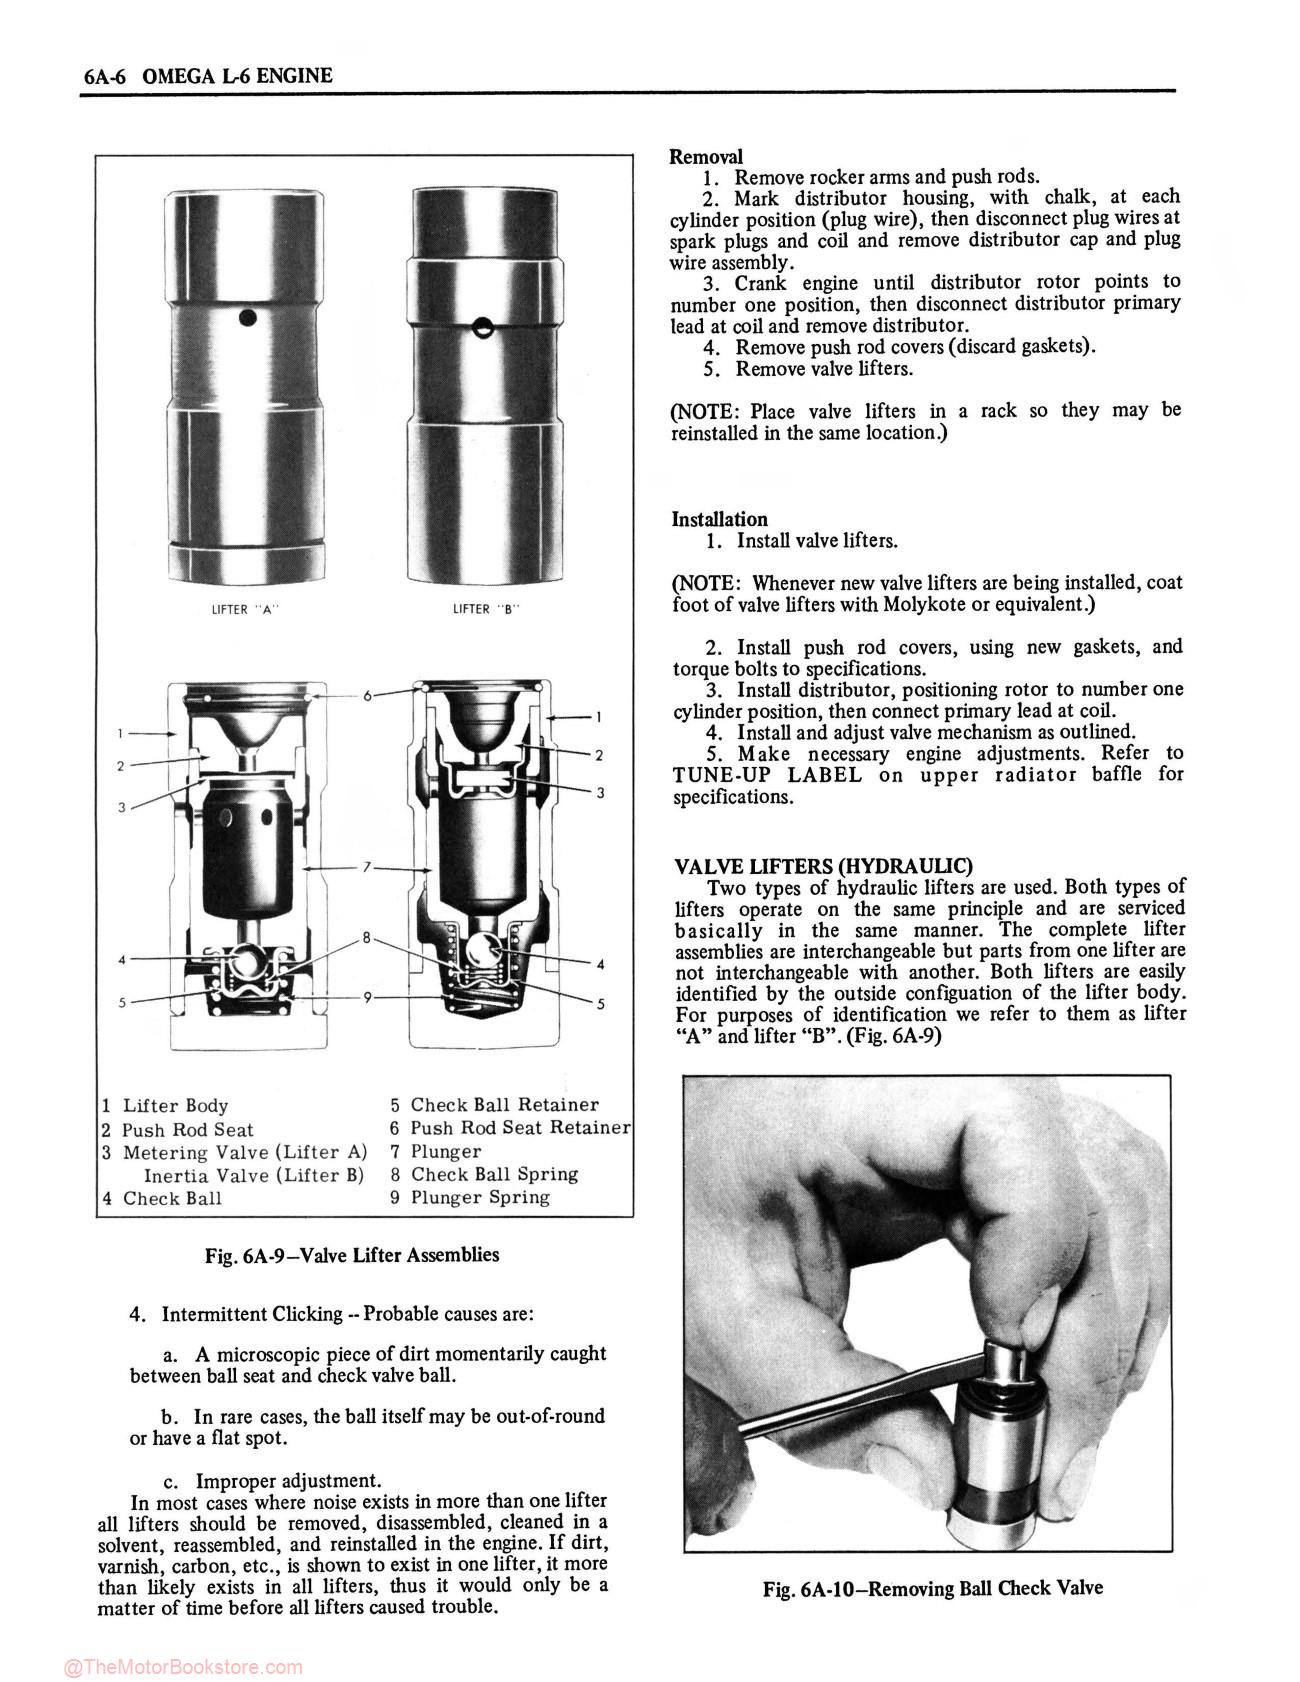 1974 Oldsmobile Service Repair Manual - Sample Page 1